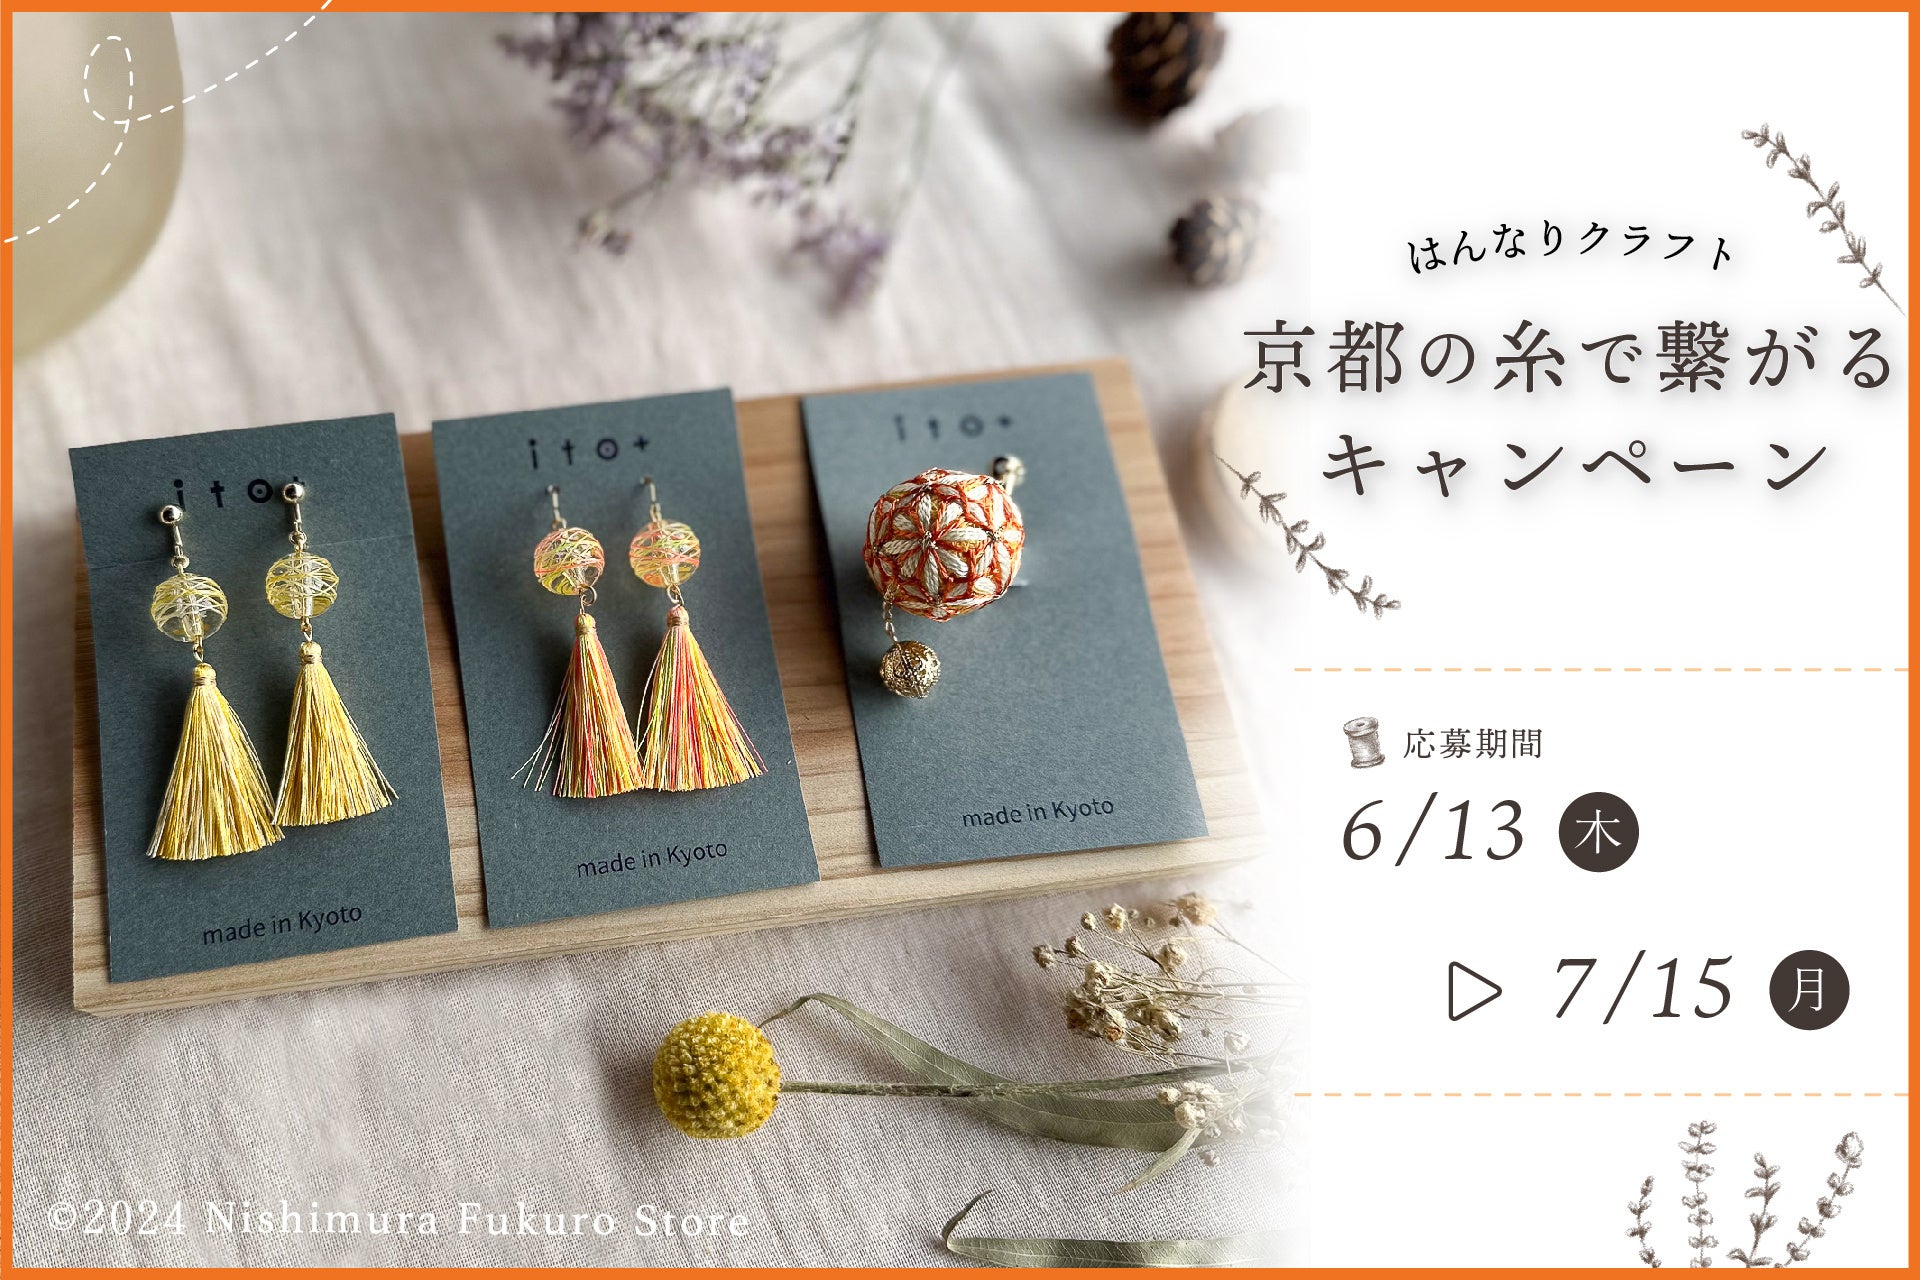 京都発ハンドメイド教室「はんなりクラフト」が「京都の糸」をテーマにオンラインキャンペーンを開始